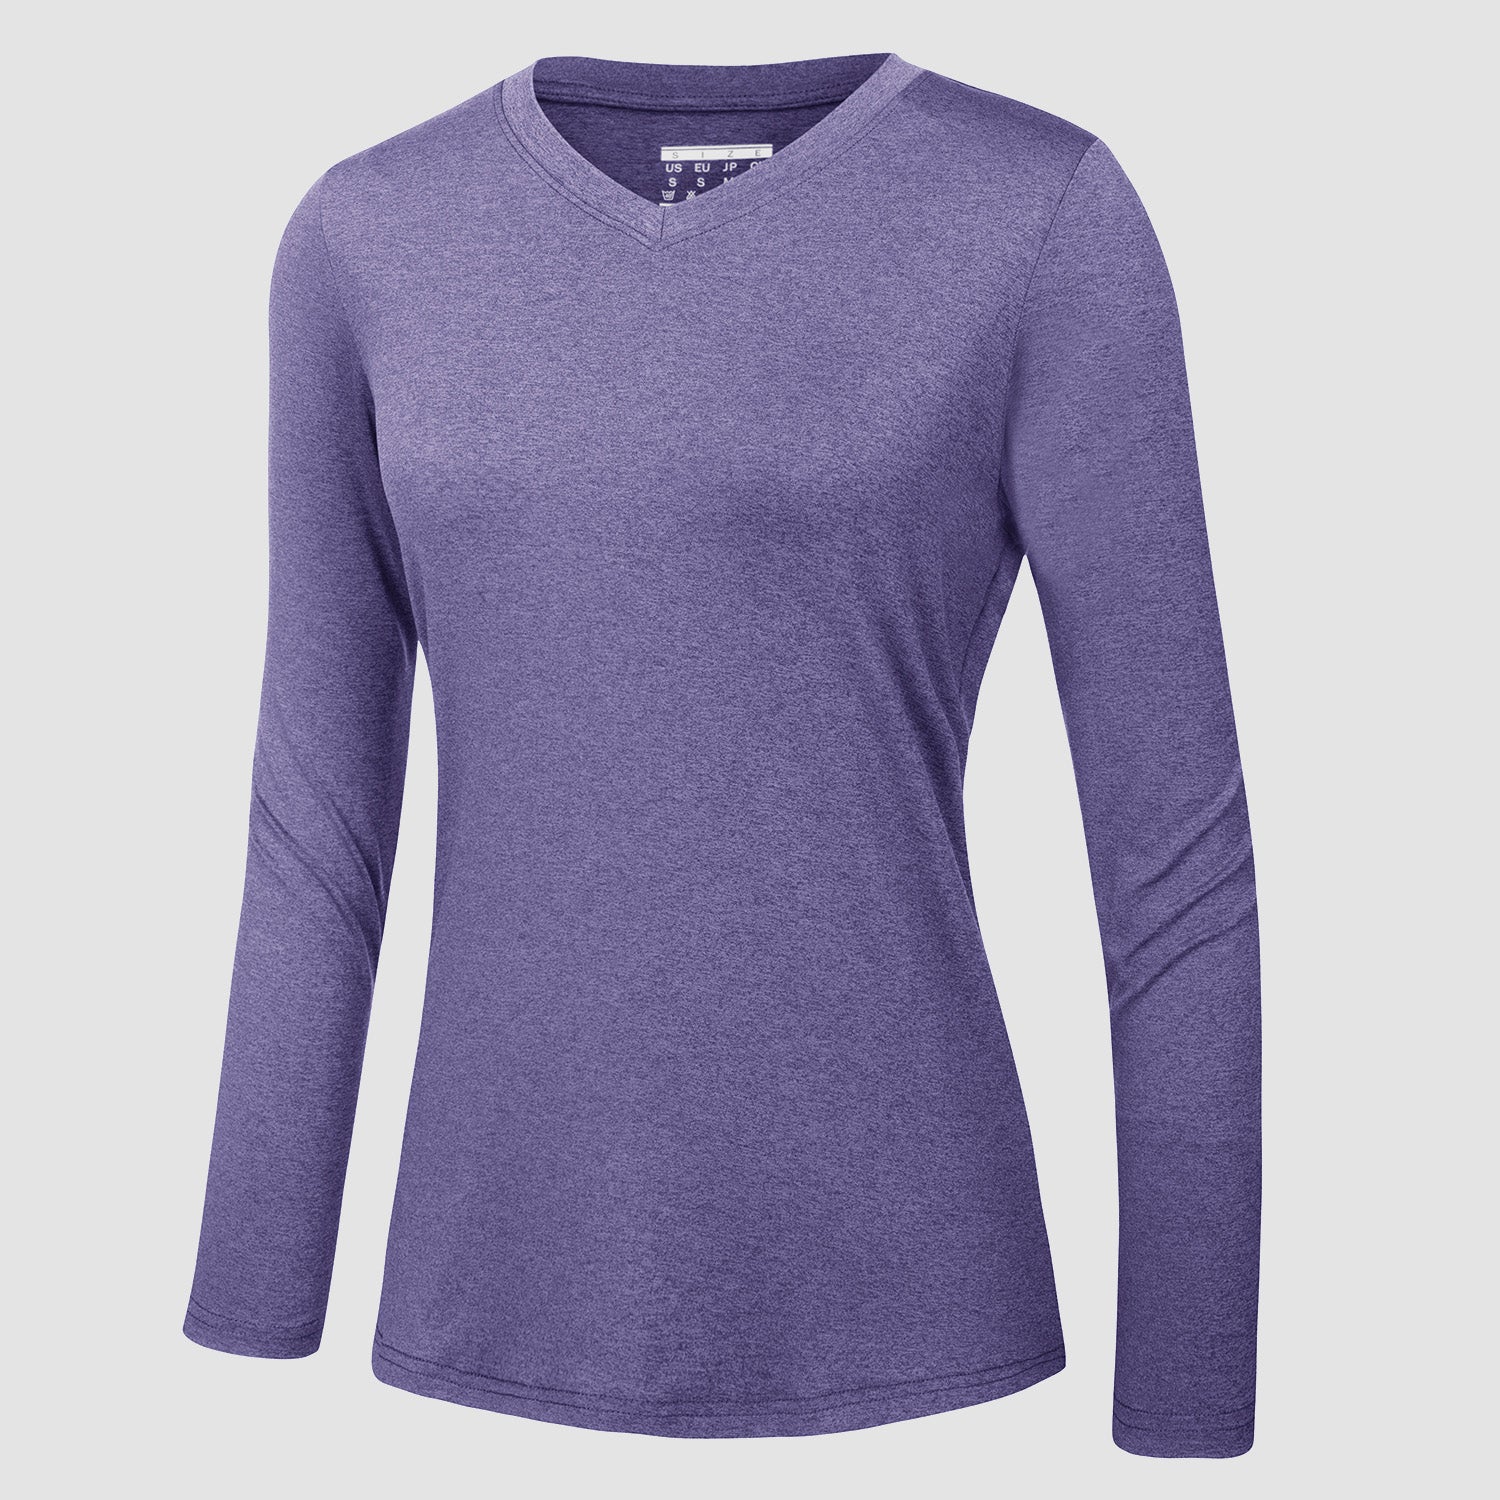 https://magcomsen.com/cdn/shop/products/Women_s-Long-Sleeve-Shirt-V-Neck-SPF-Shirts-UPF-50_-Quick-Dry-Workout-Hiking-Tee-Shirts-Rashguard_26.jpg?v=1666680575&width=1500